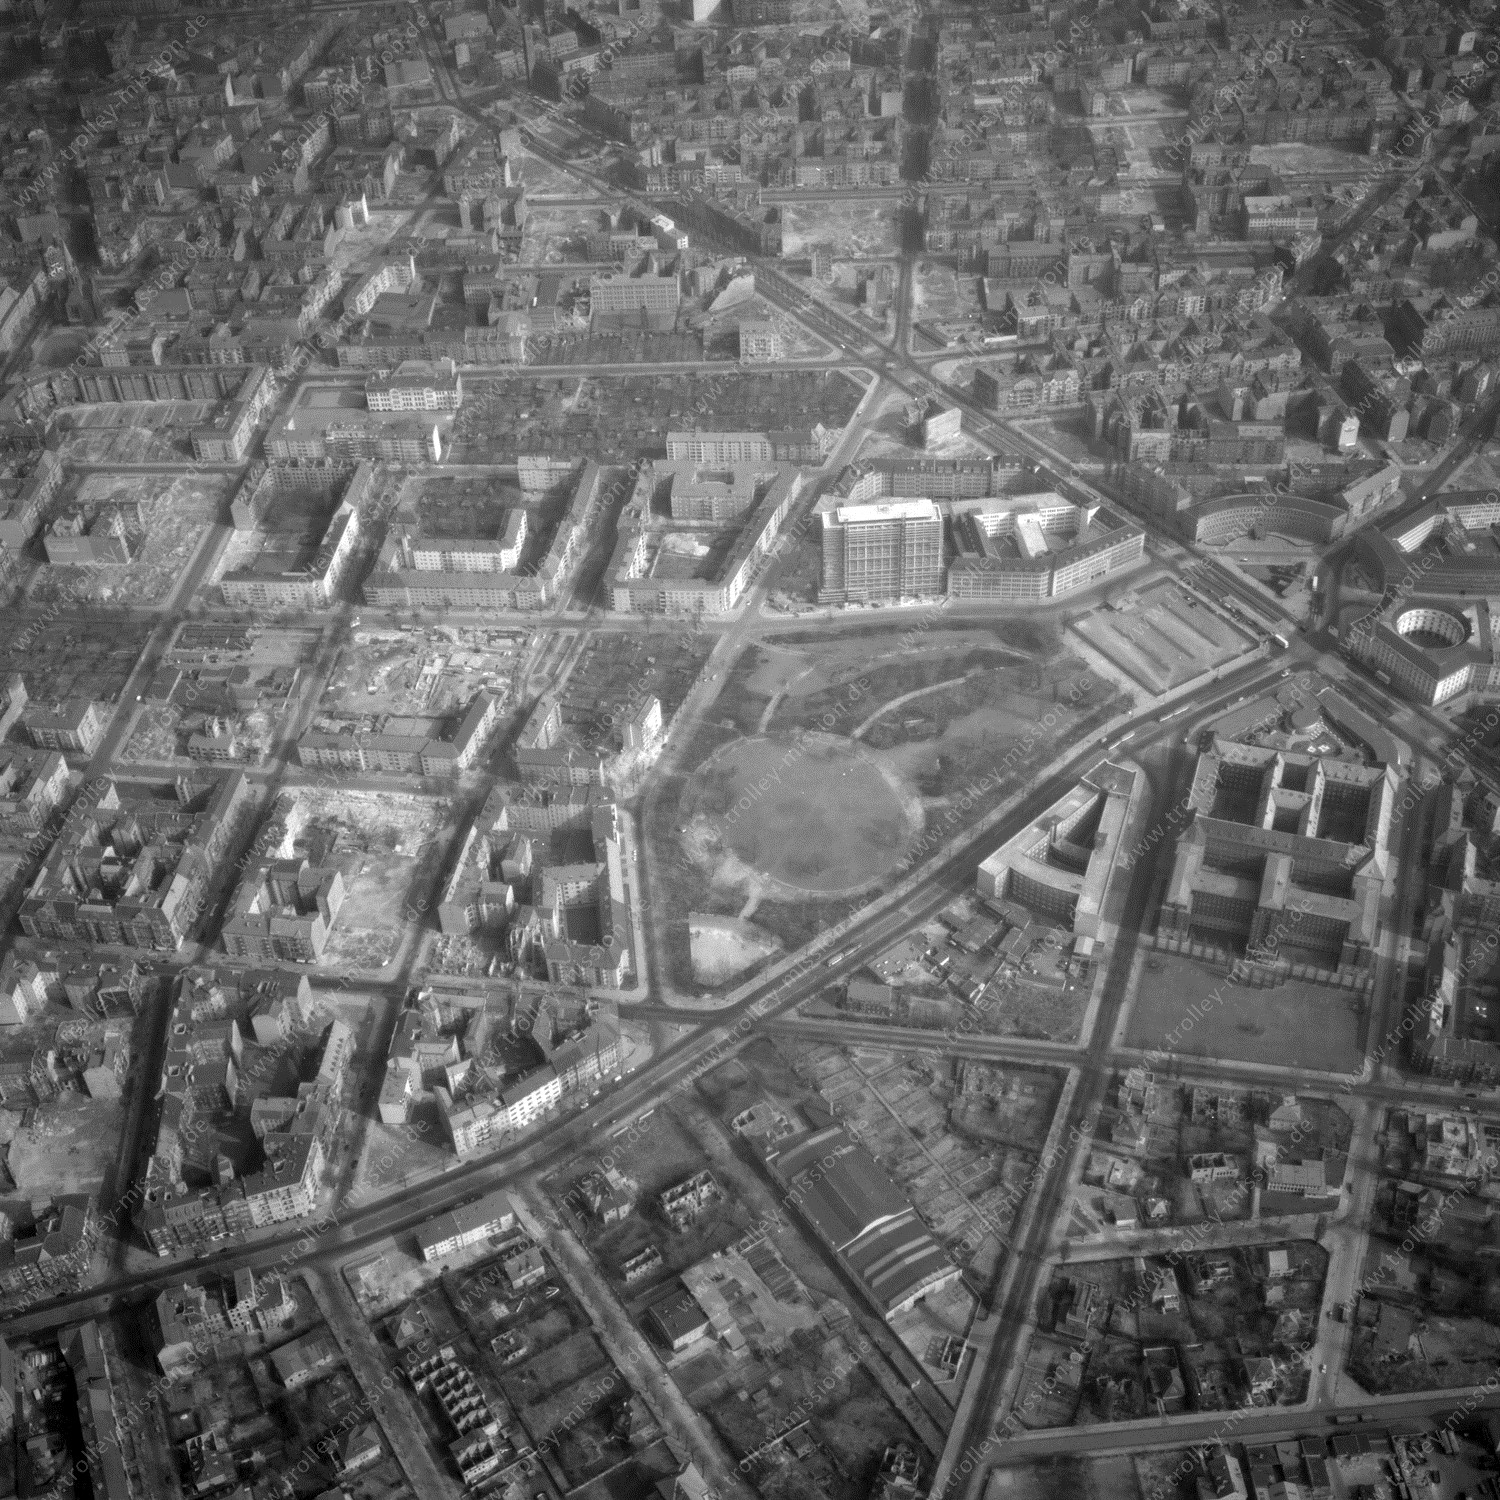 Alte Fotos und Luftbilder von Berlin - Luftbildaufnahme Nr. 08 - Historische Luftaufnahmen von West-Berlin aus dem Jahr 1954 - Flugstrecke Charlie